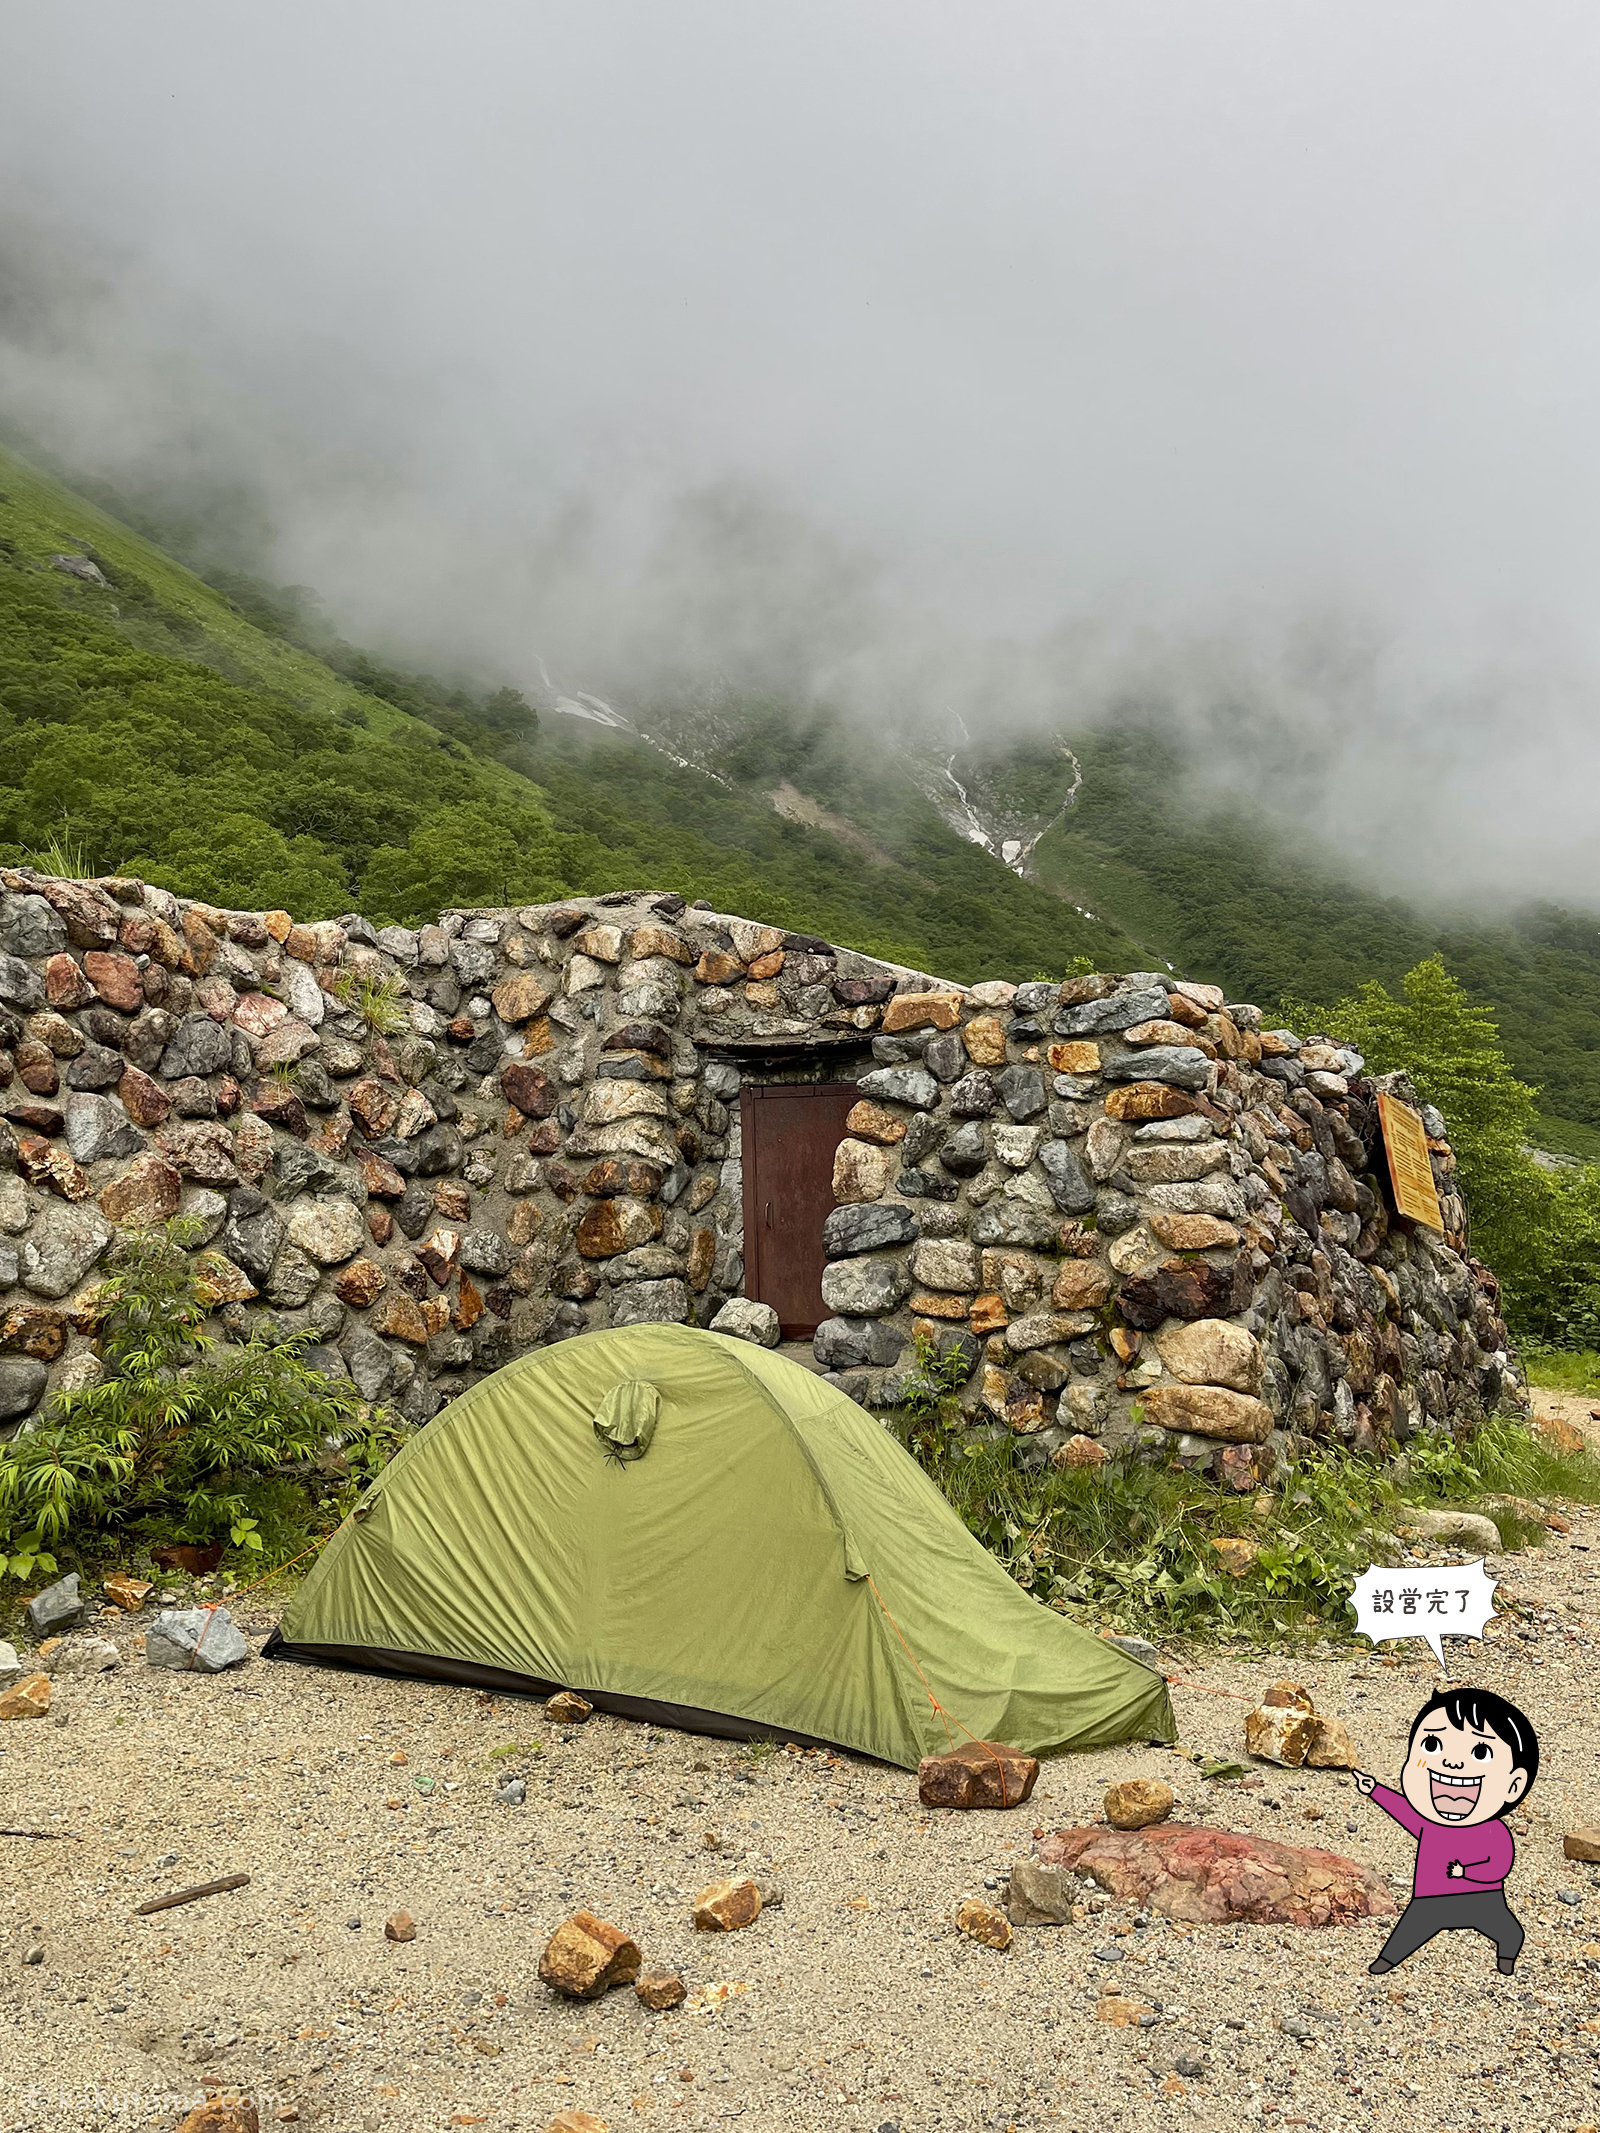 ババ平キャンプ場にテントを張った